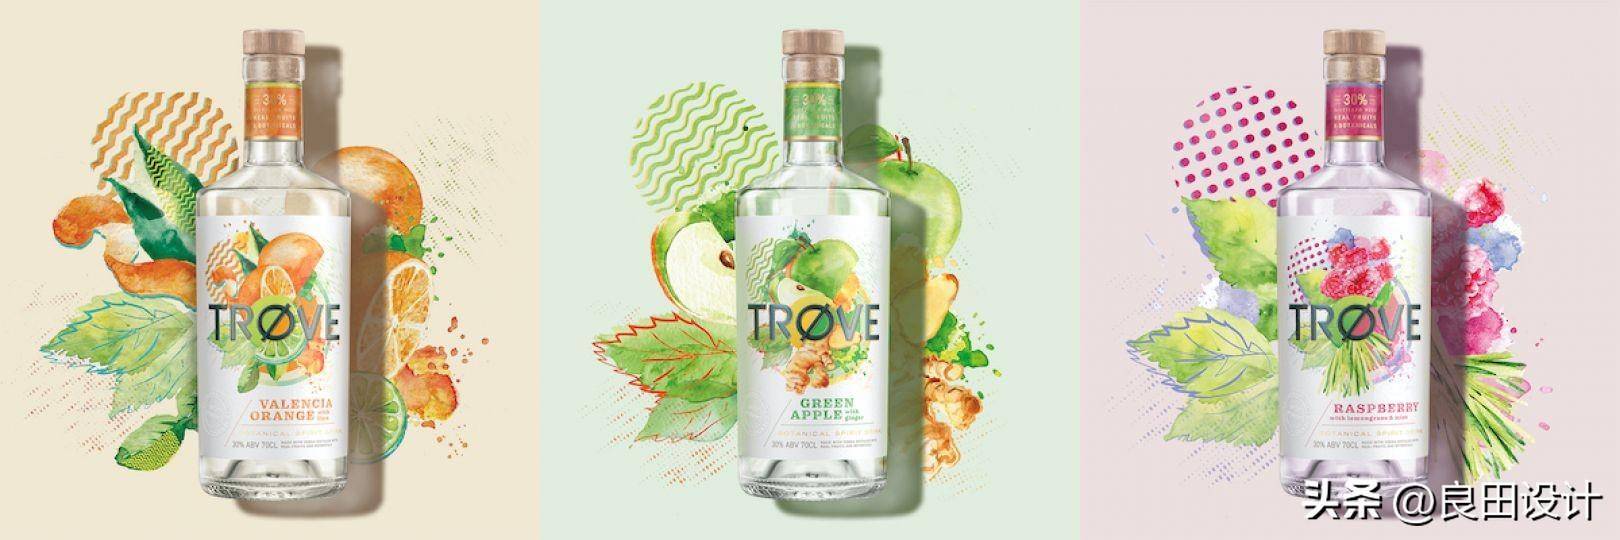 苹果主题插图手绘版:为新的低酒精、低热量烈酒品牌 TRØVE 创作的酒包装设计-第4张图片-太平洋在线下载